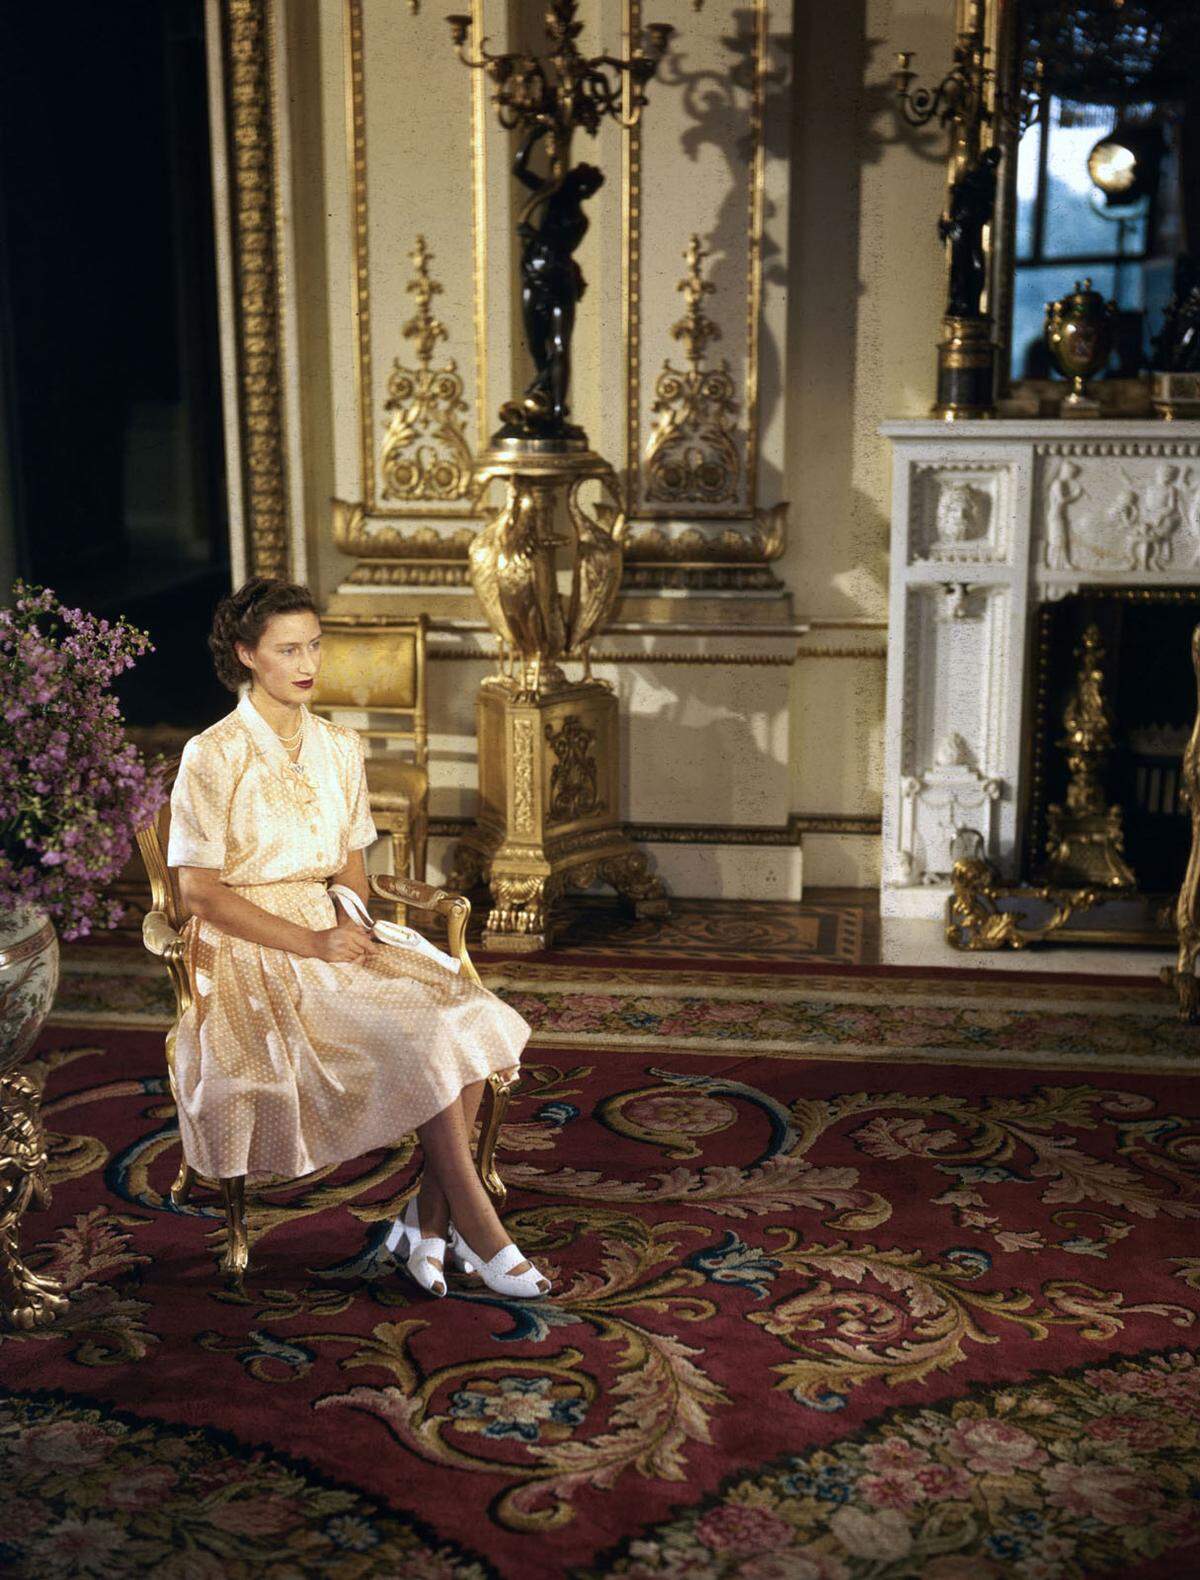 Prinzessin Margaret war eine Modeikone ihrer Zeit. Anders als ihre ältere Schwester favorisierte sie etwa die glamourösen "New Look"-Roben von Dior um ihre Sanduhrfigur zu betonen. Sie setzte auf große Sonnenbrillen und auffällige Hüte und Turbane. In den 1950er-Jahren war sogar die Bezeichnung "The Margaret Look" gängig. Im Bild: Prinzessin Margaret als 17-Jährige. Bei diesem Outfit dürfte sie selbst noch wenig Mitspracherecht gehabt haben.   